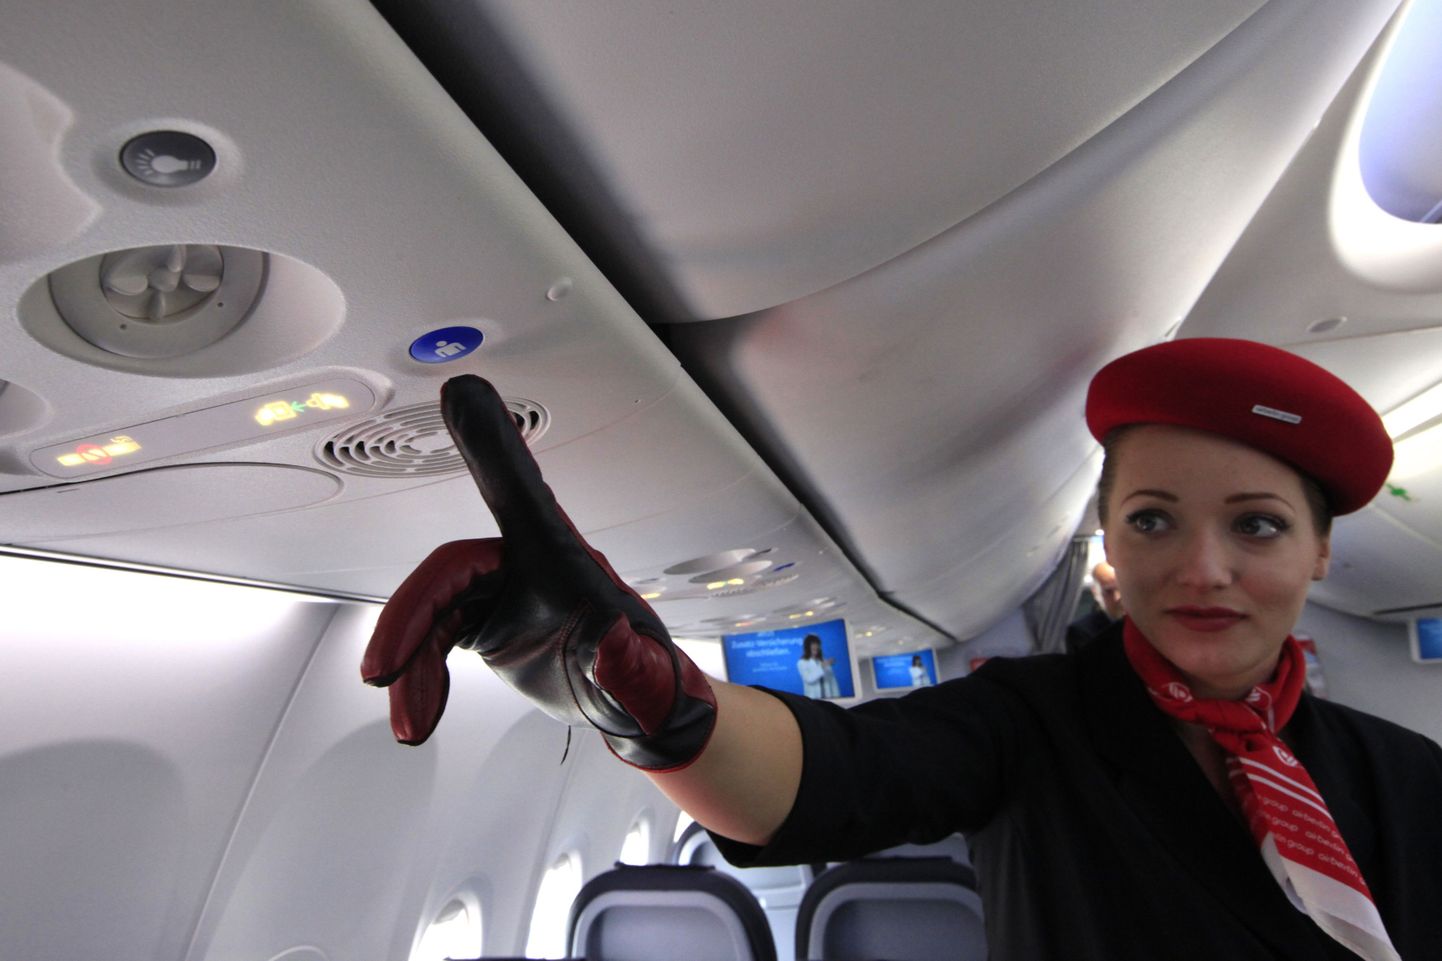 Millised on stjuardesside töö negatiivsed küljed?